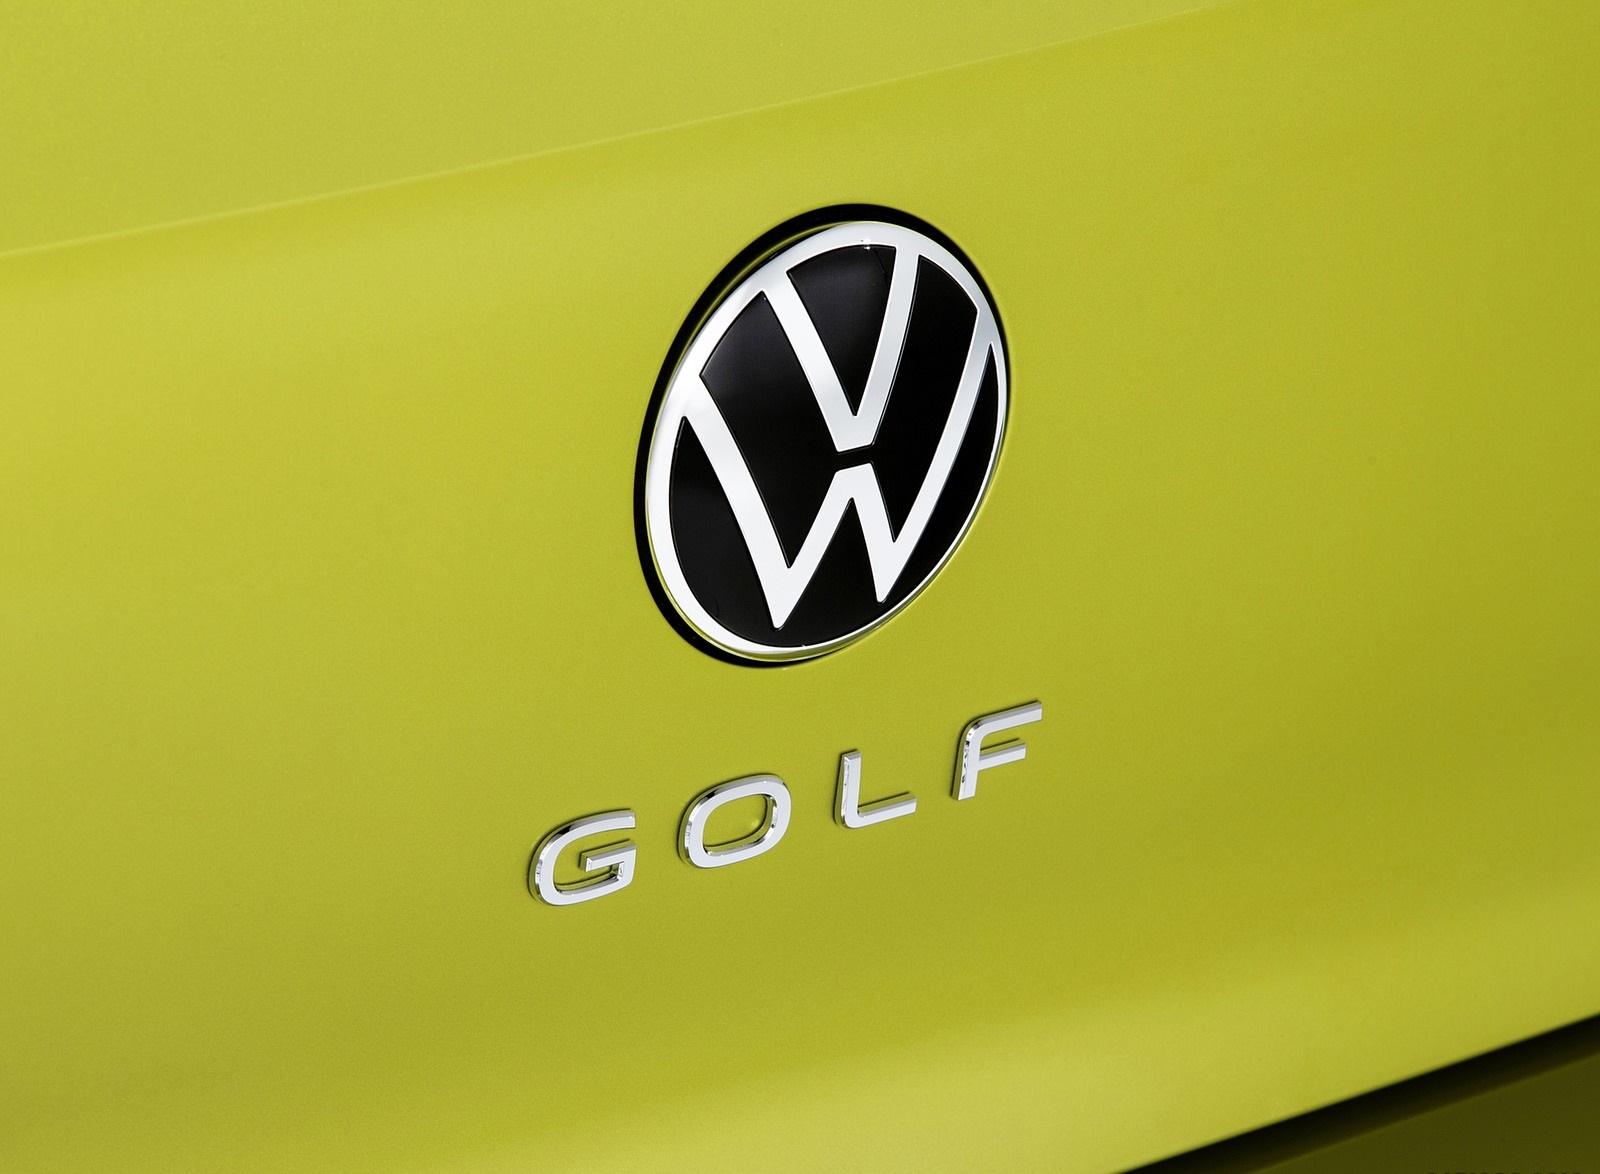 2020 Volkswagen Golf Mk8 Badge Wallpapers #49 of 81